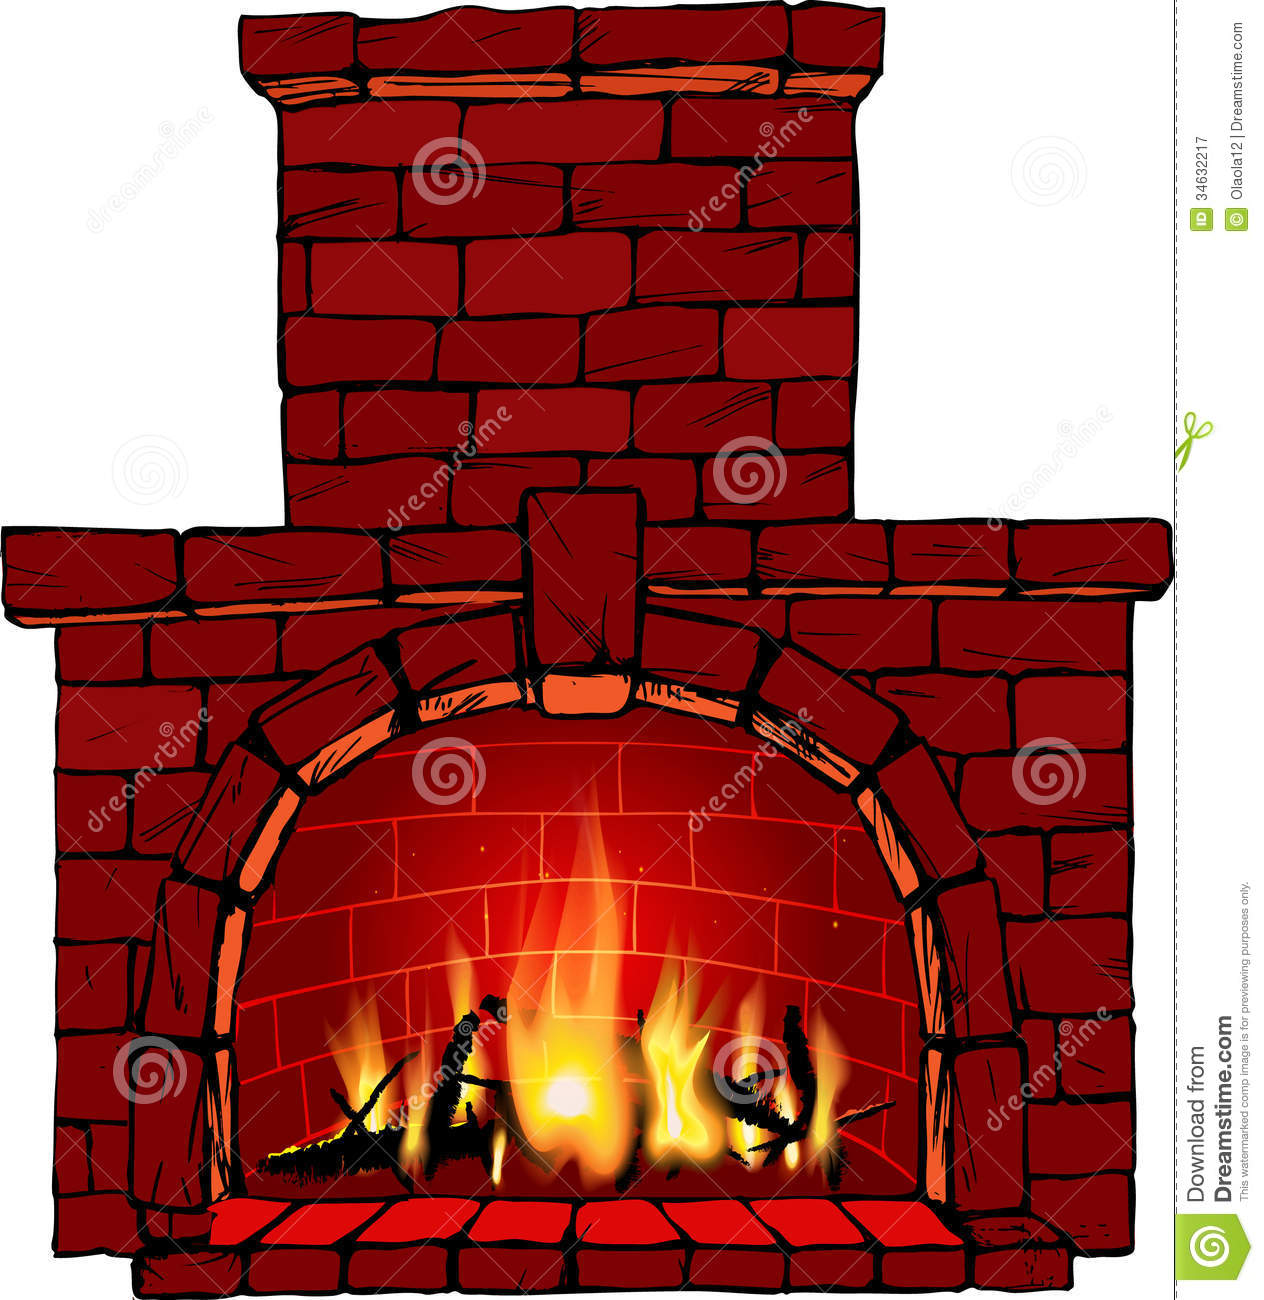 chimney clipart brick chimney